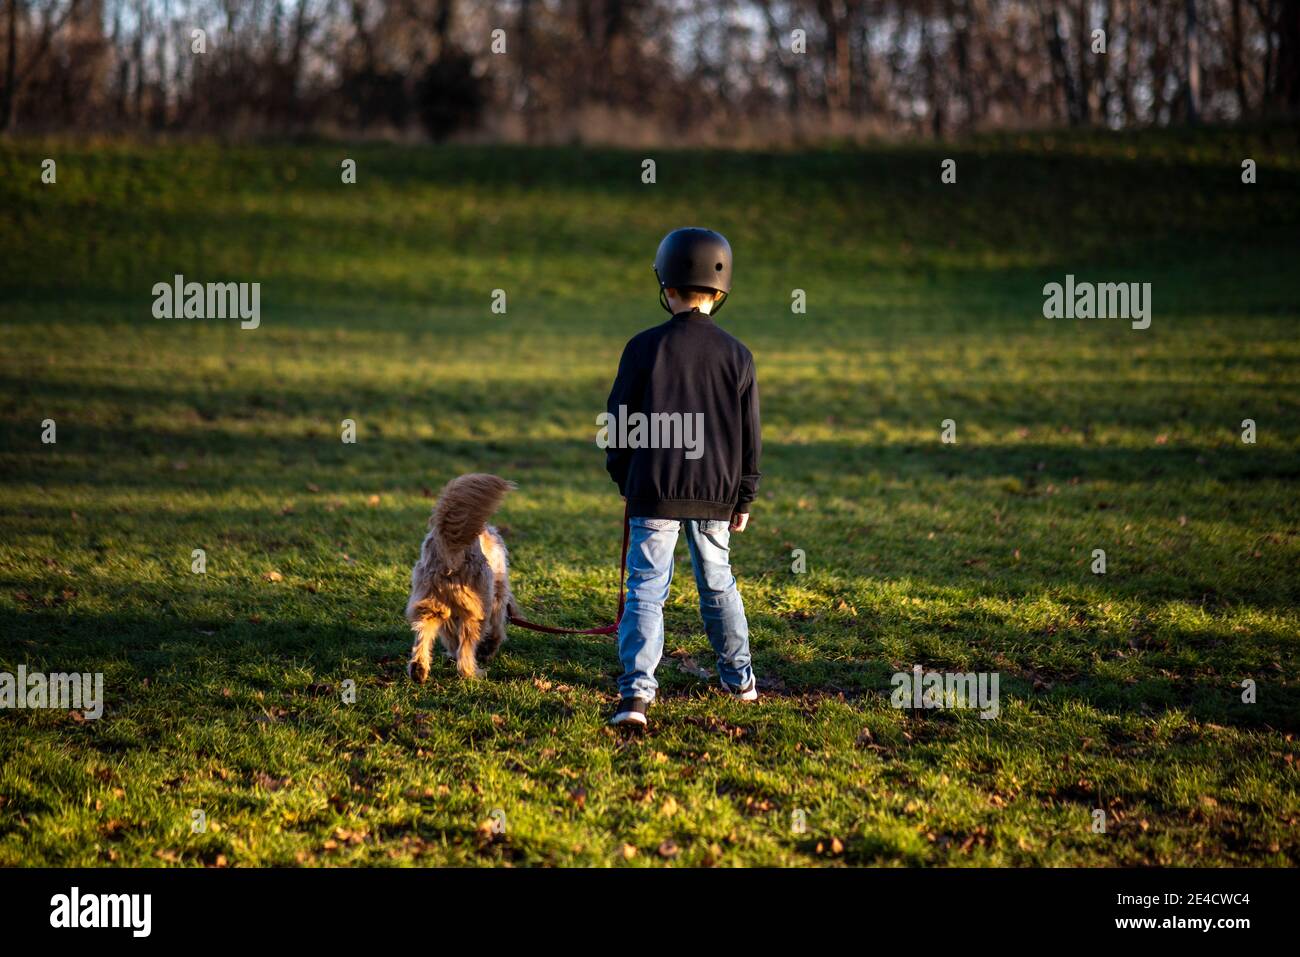 Un garçon marche avec son chien dans un pré Banque D'Images